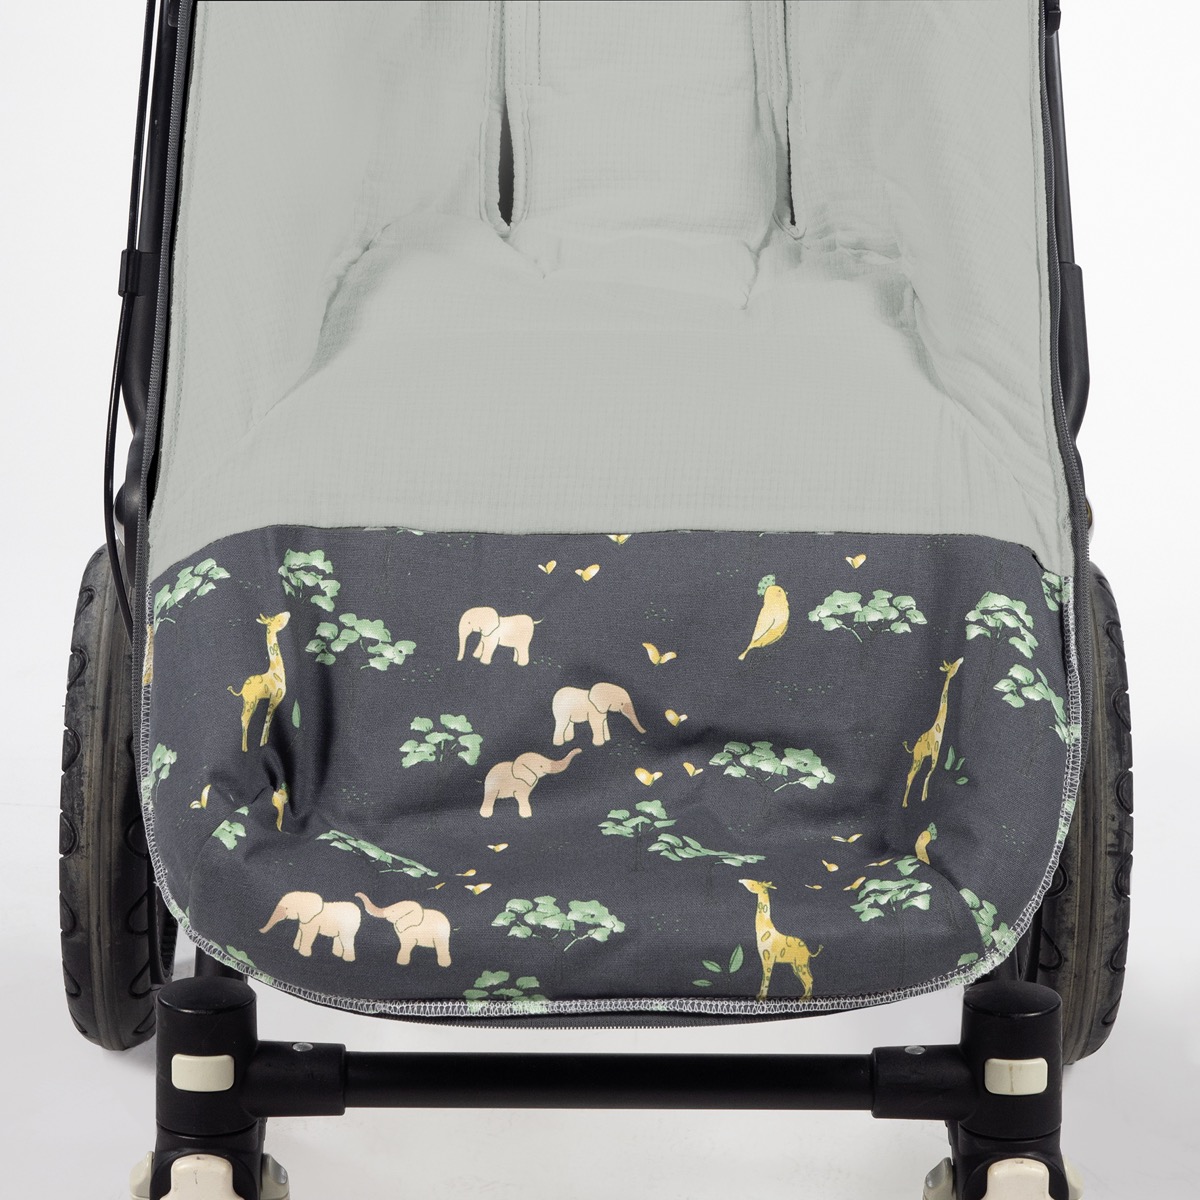 Saco Universal Animales Rosa para sillas de paseo de bebés en invierno